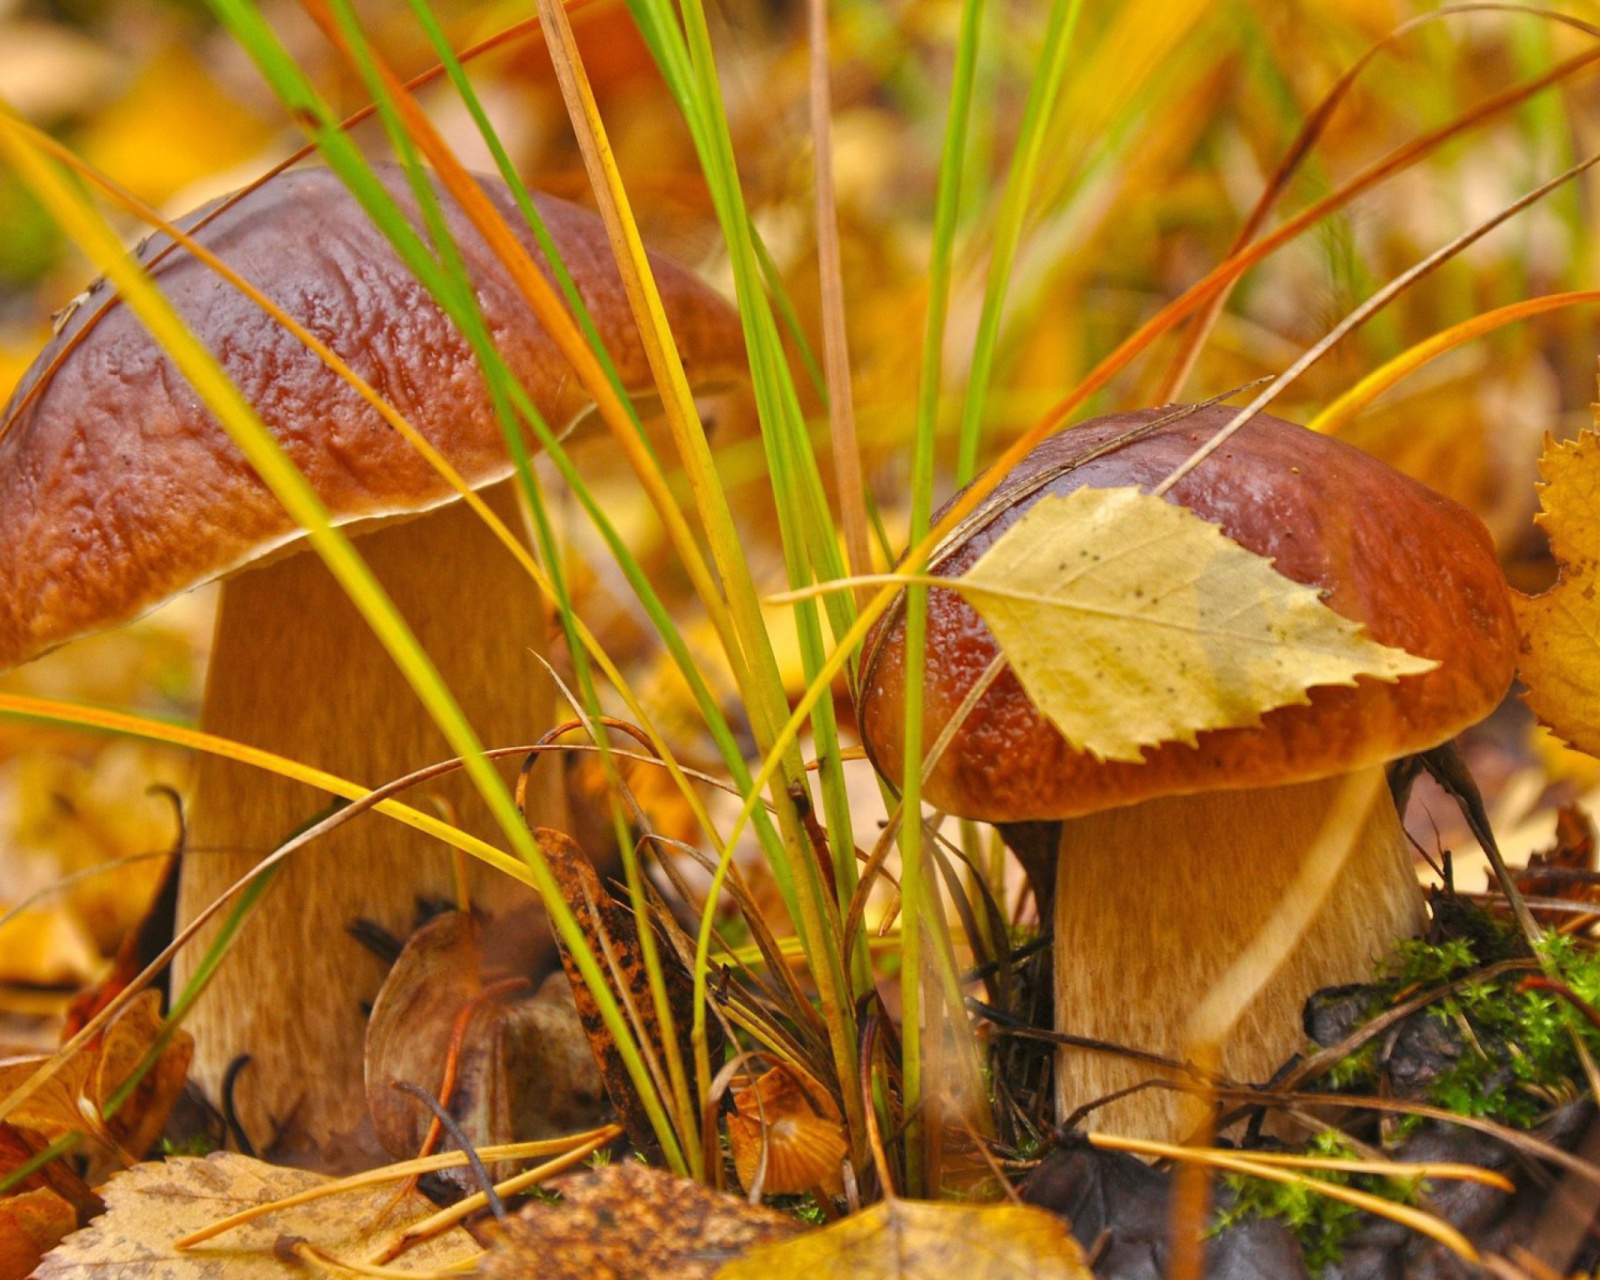 Обои Autumn Mushrooms with Yellow Leaves 1600x1280